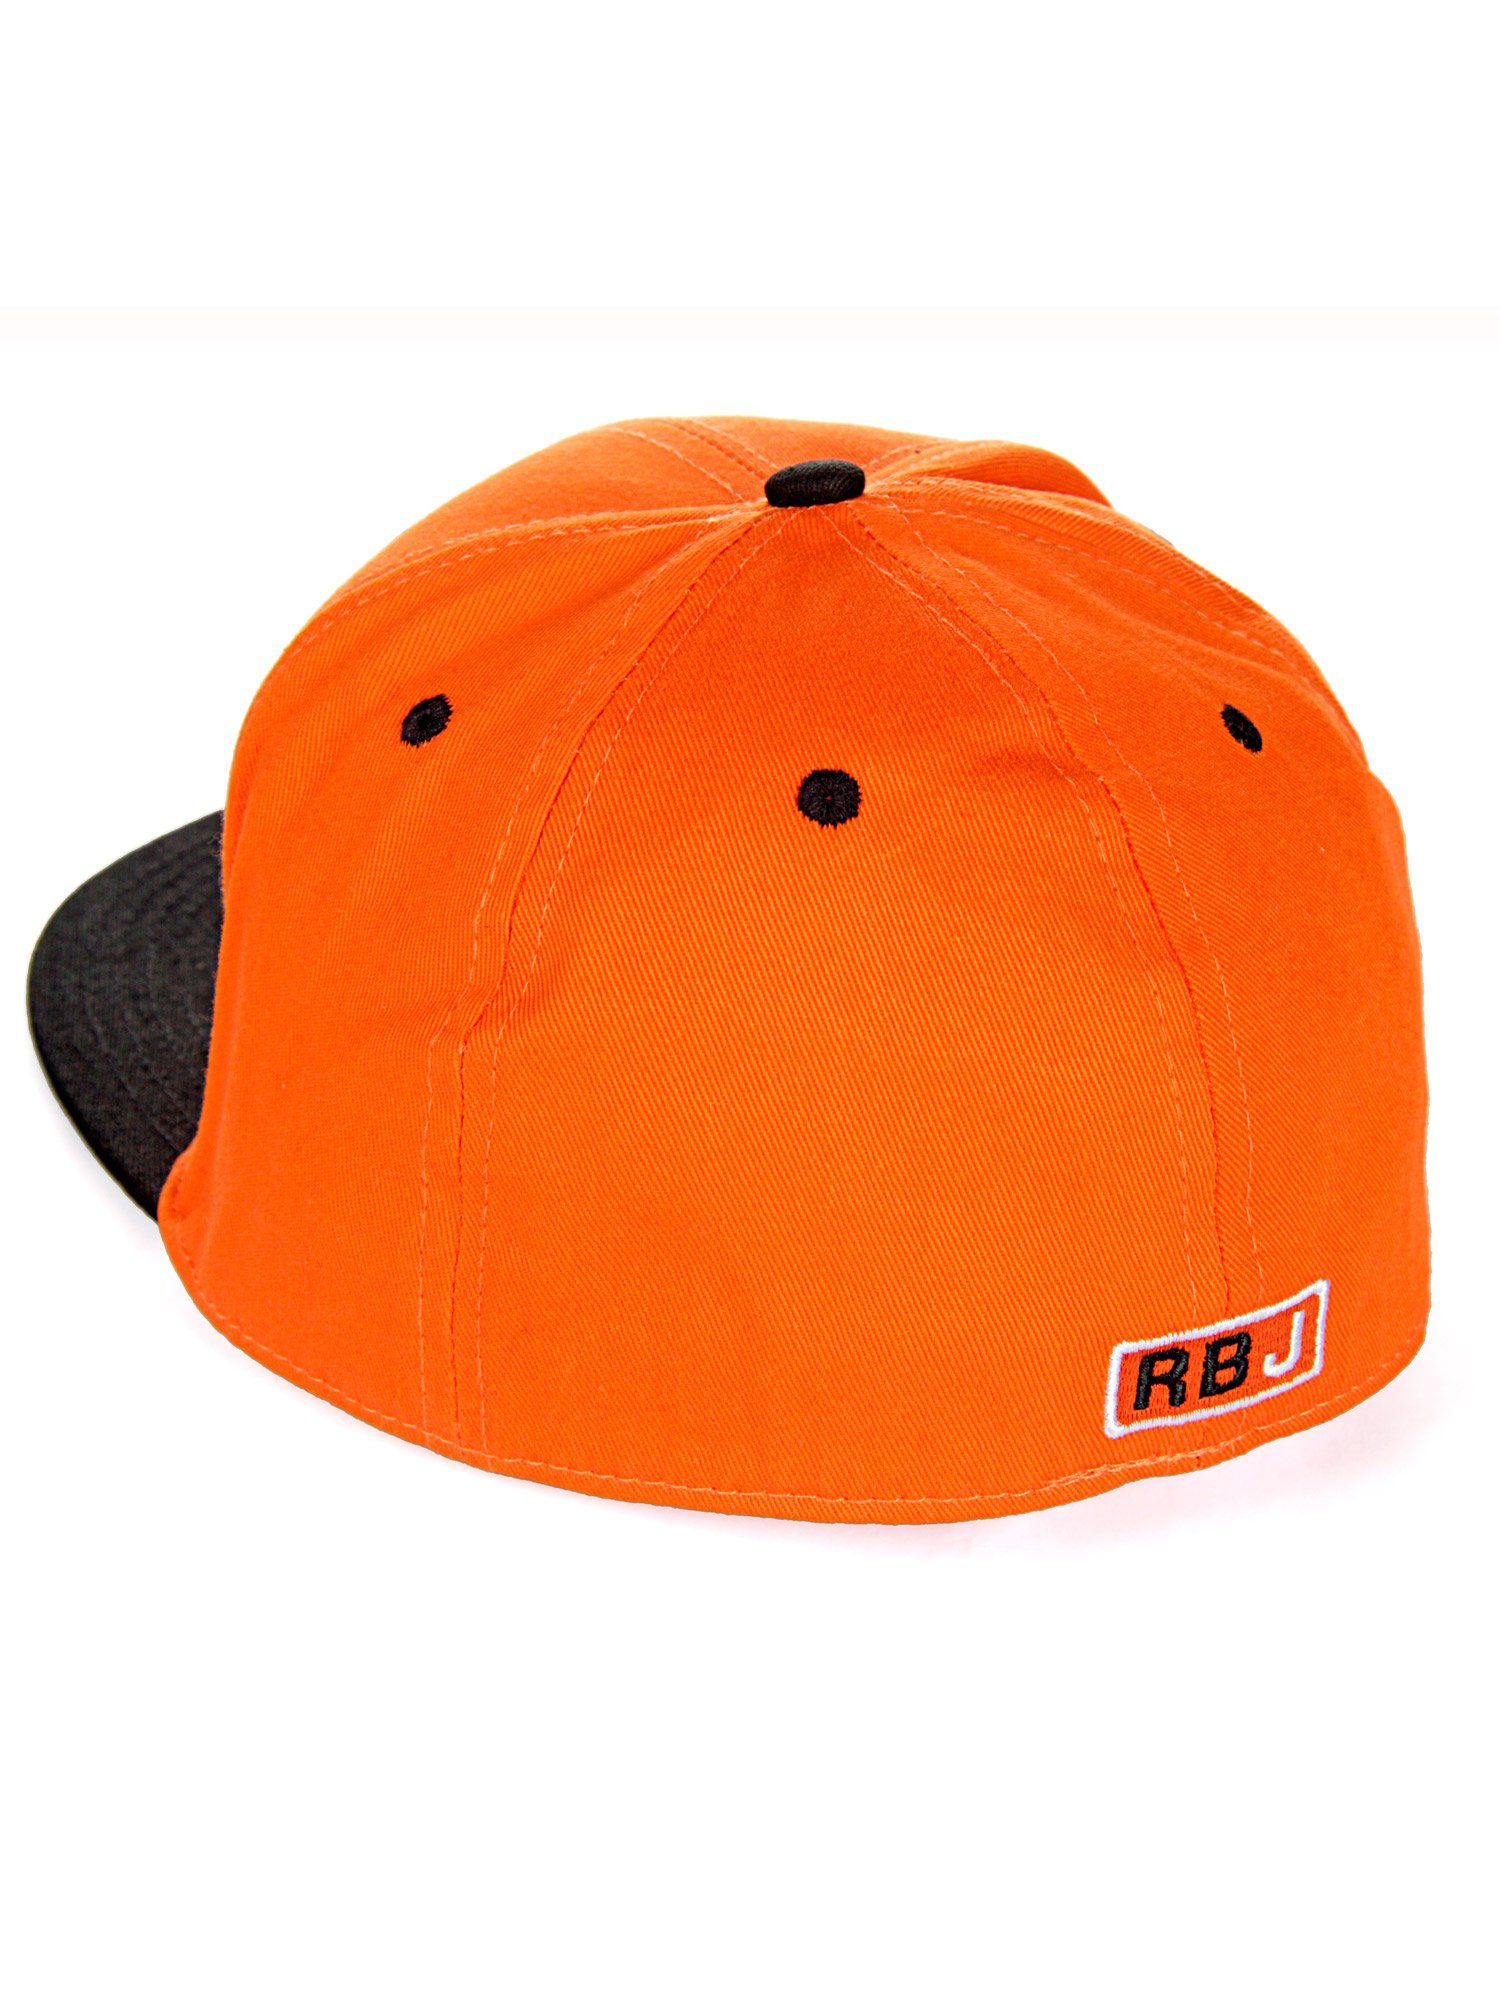 RedBridge Baseball Cap Durham mit kontrastfarbigem orange-schwarz Schirm